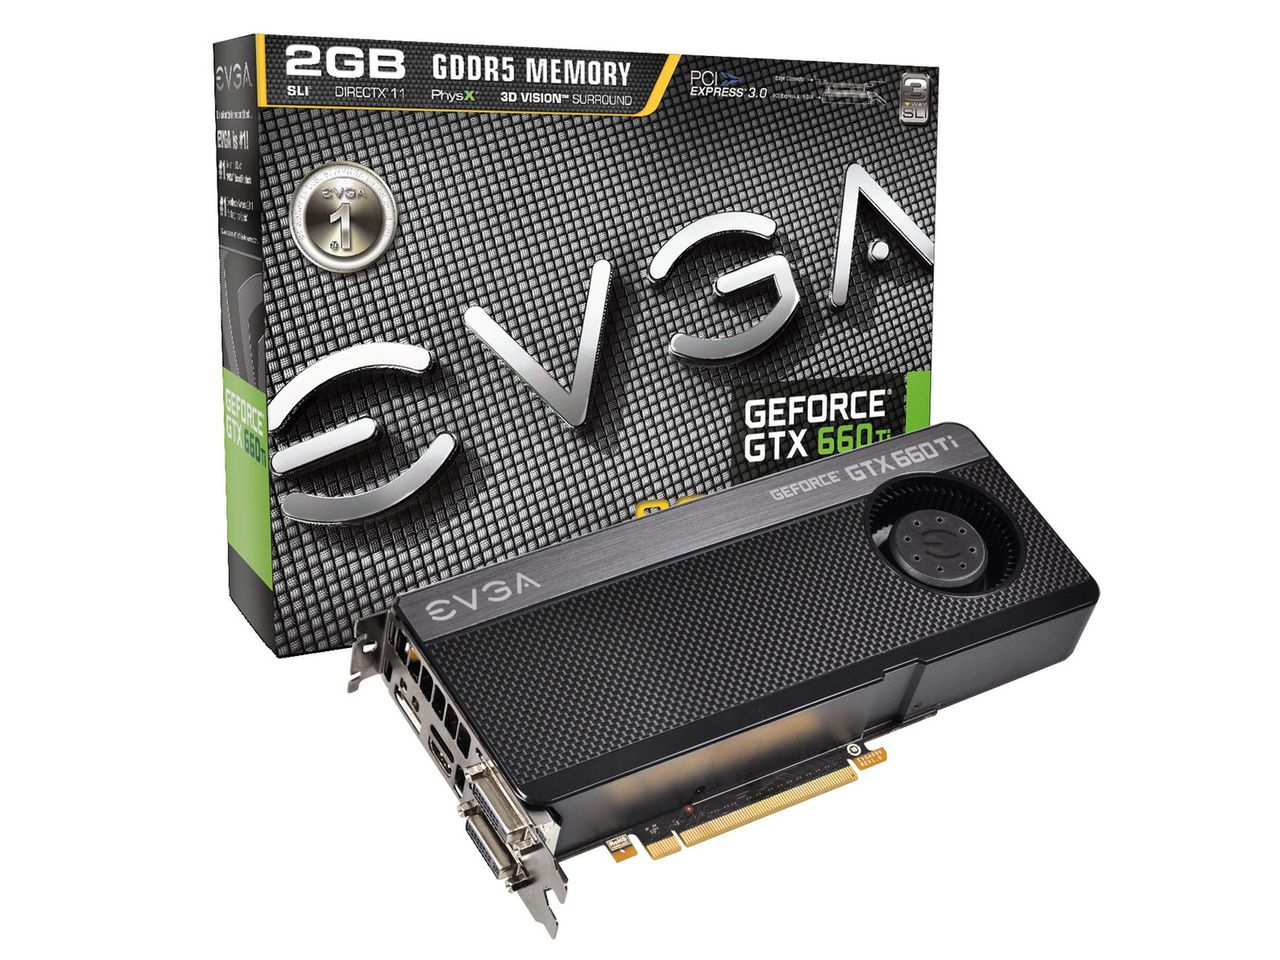 Nvidia GeForce GTX 660Ti - mocne wejście. Co na to AMD?